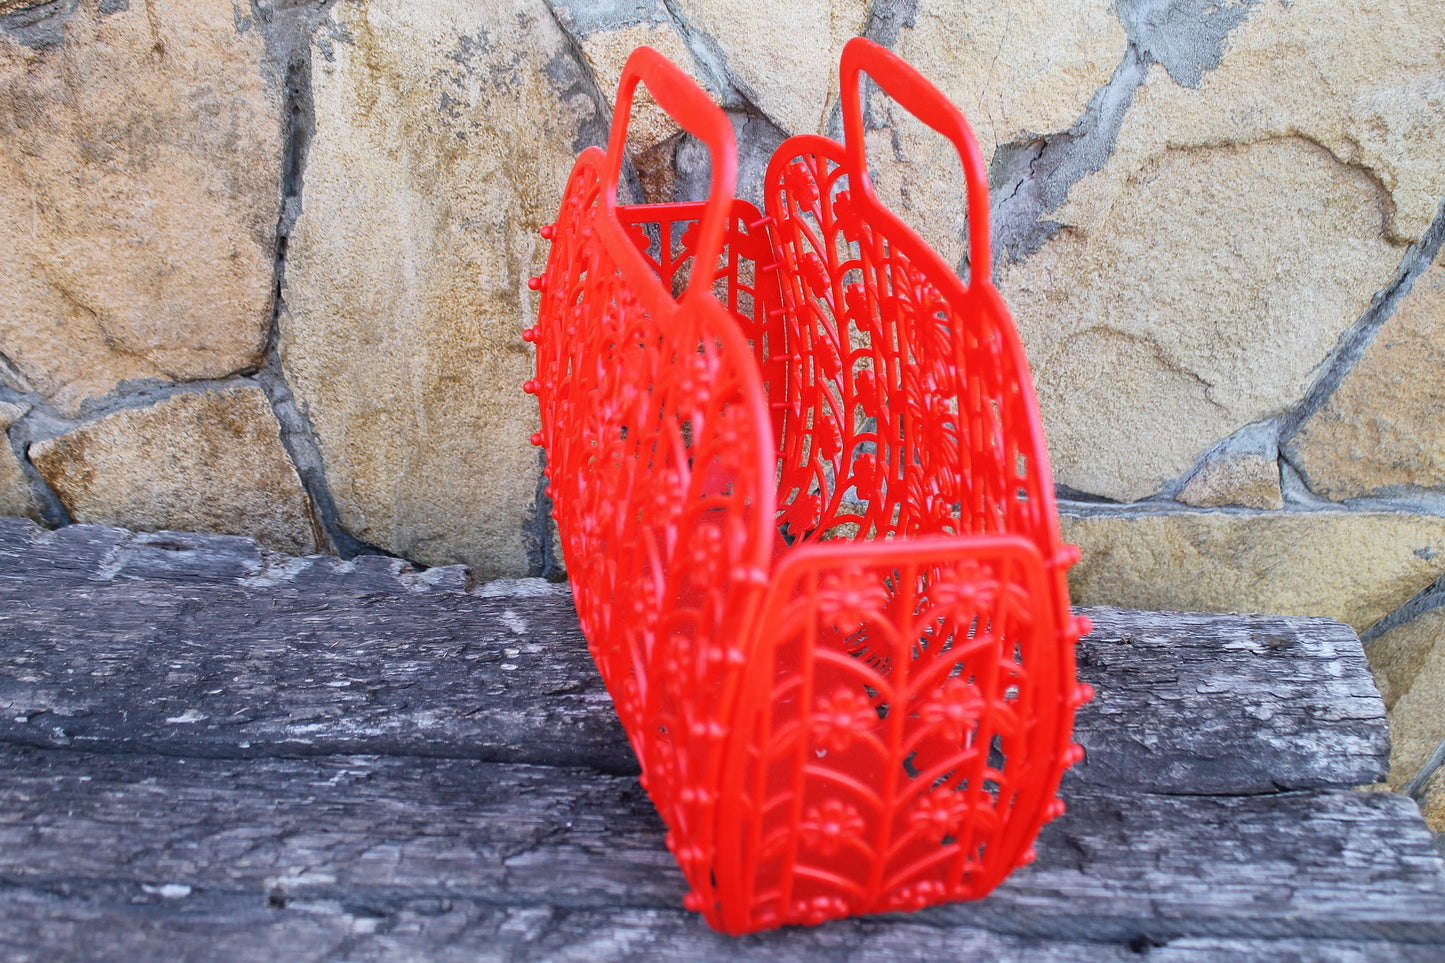 Vintage red kids basket 10 inches - Go shopping - Made in USSR - Plastic basket - Picnic basket - reusable bag - 1980-1990s